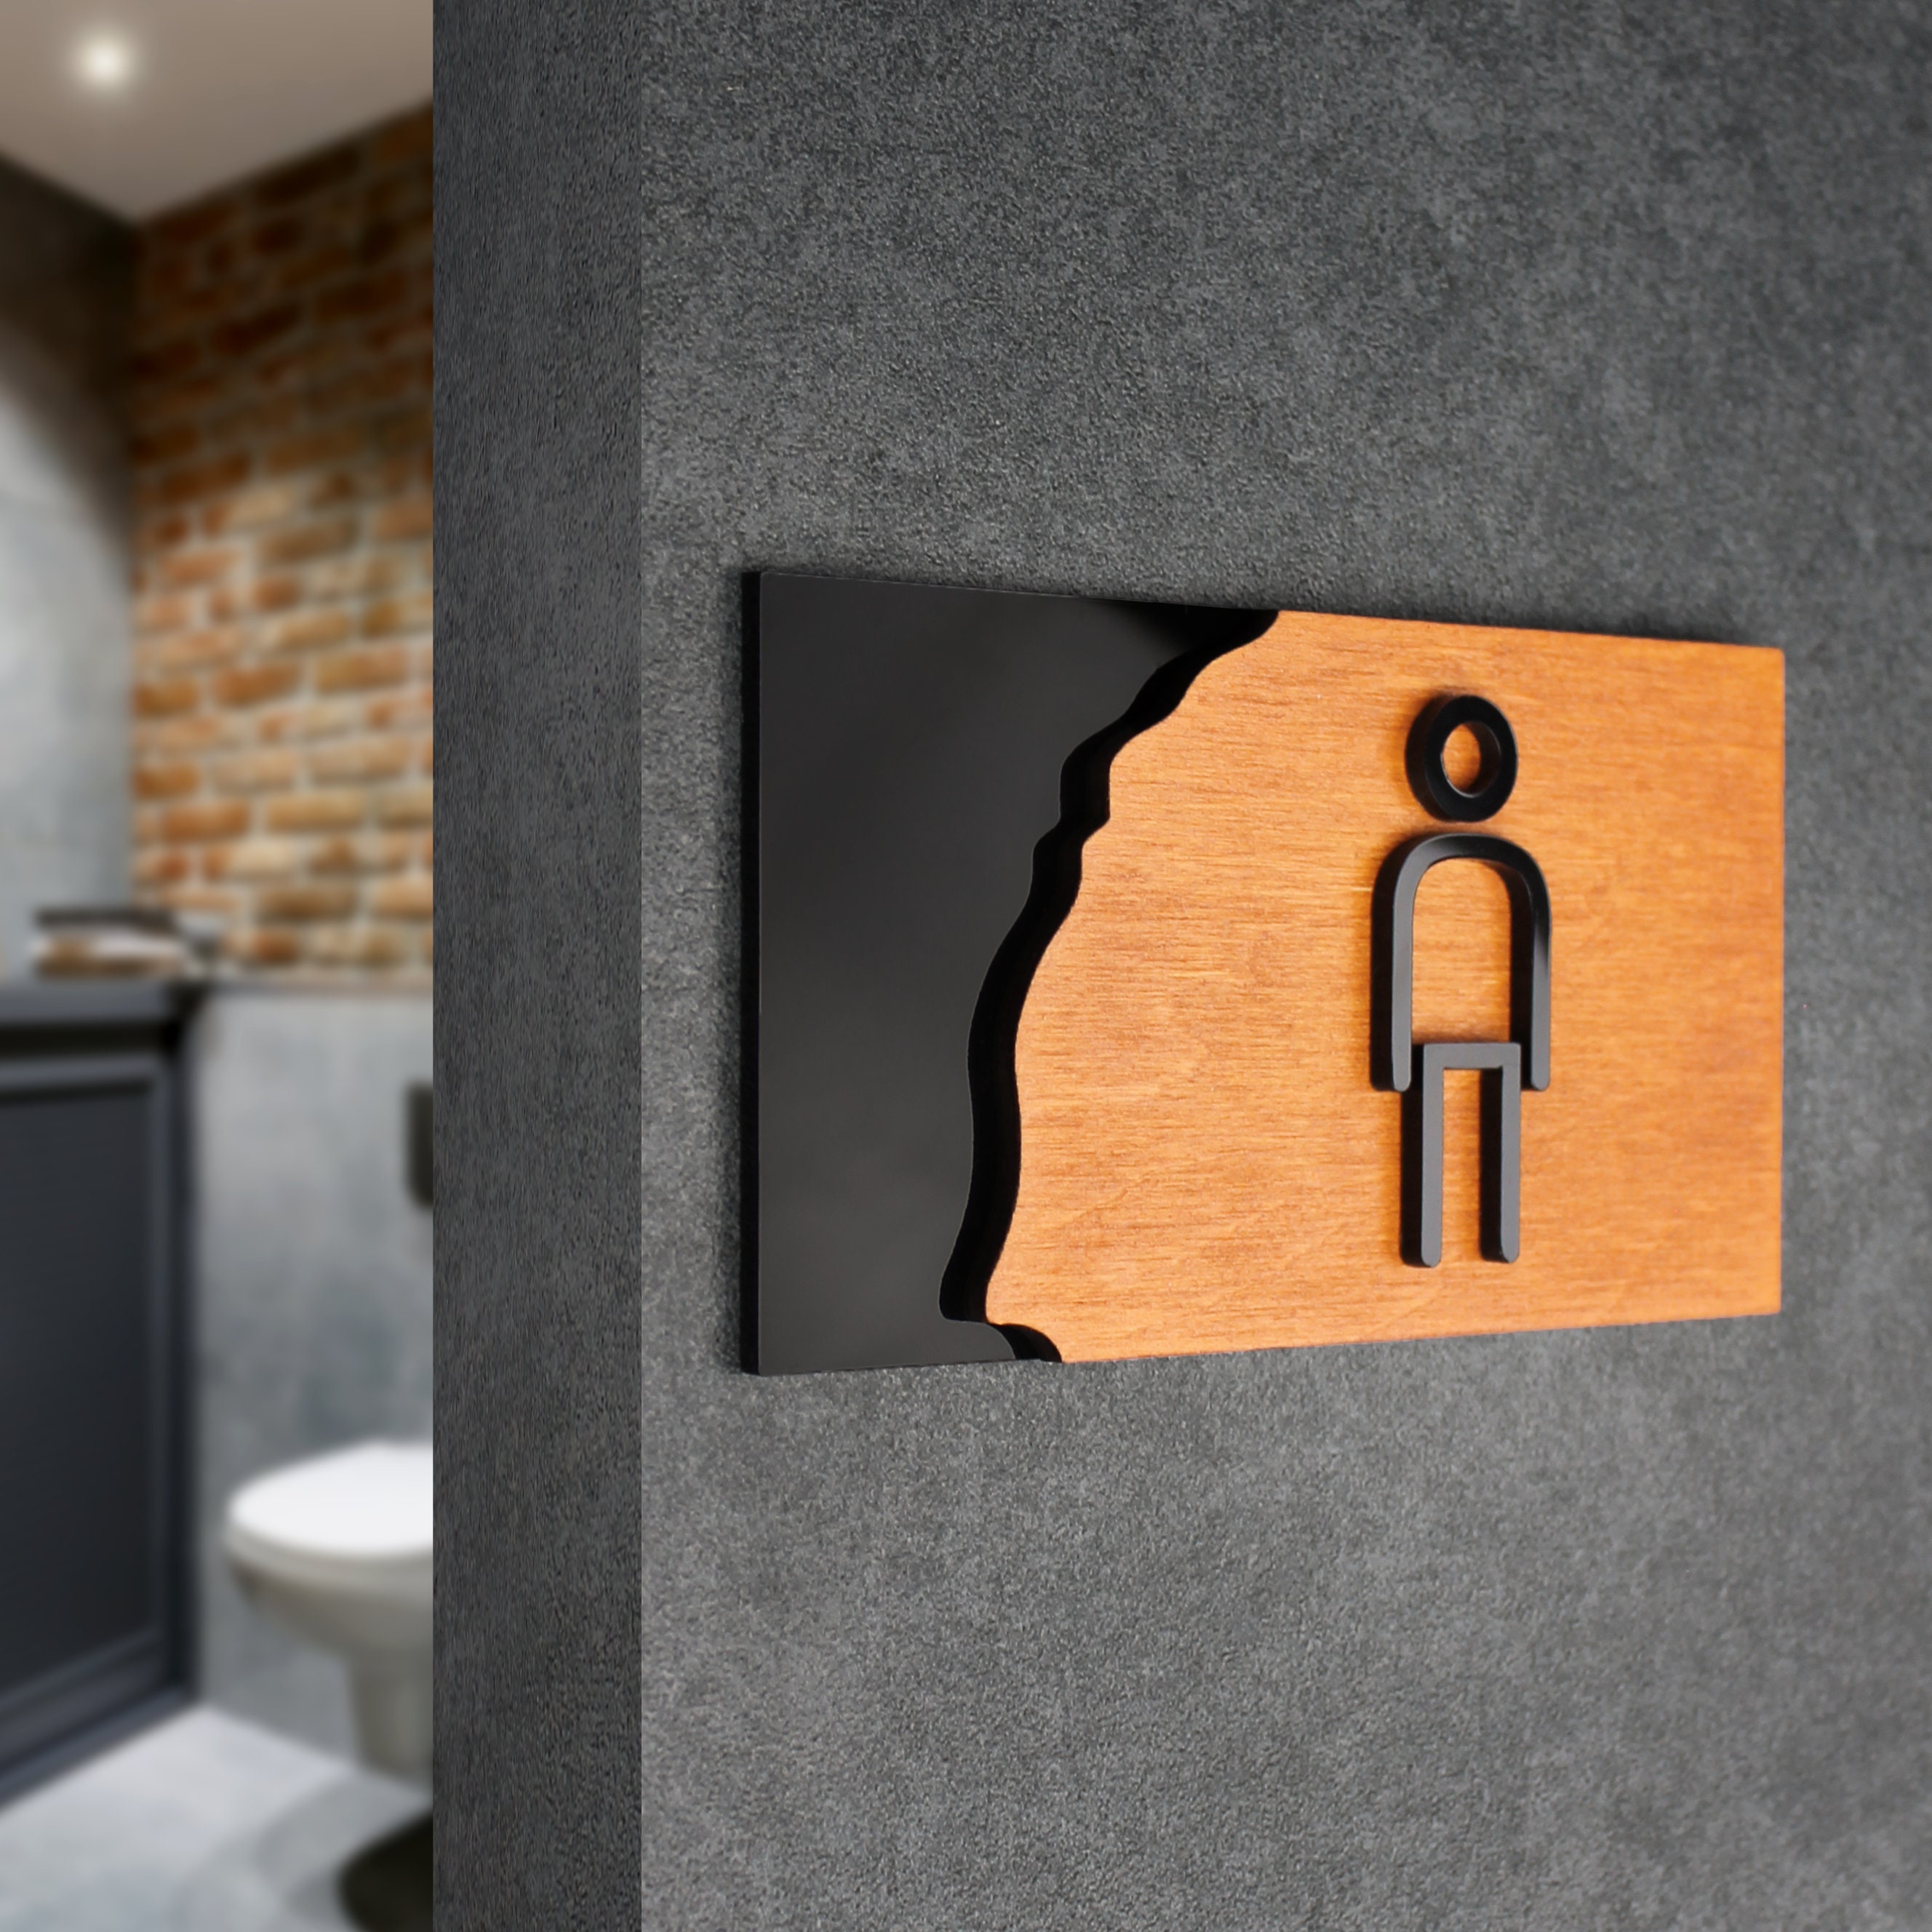 Männer Badezimmer Zeichen moderne Toilette Tür Beschilderung | Etsy